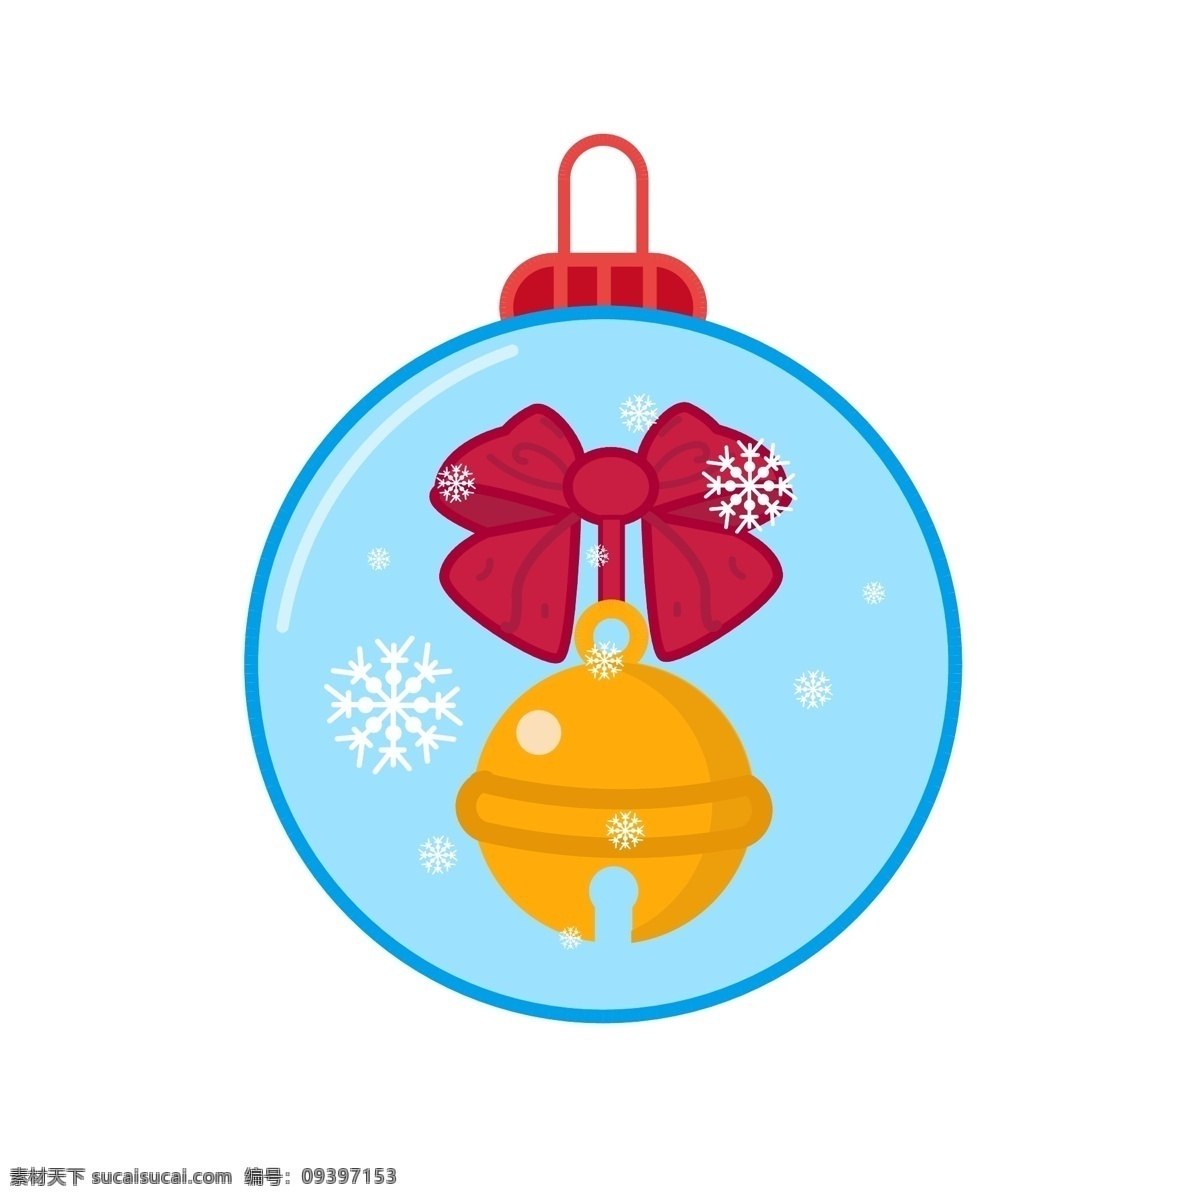 圣诞节 元素 装饰 图标 雪人 蝴蝶结 铃铛 雪花 装饰图案 红色